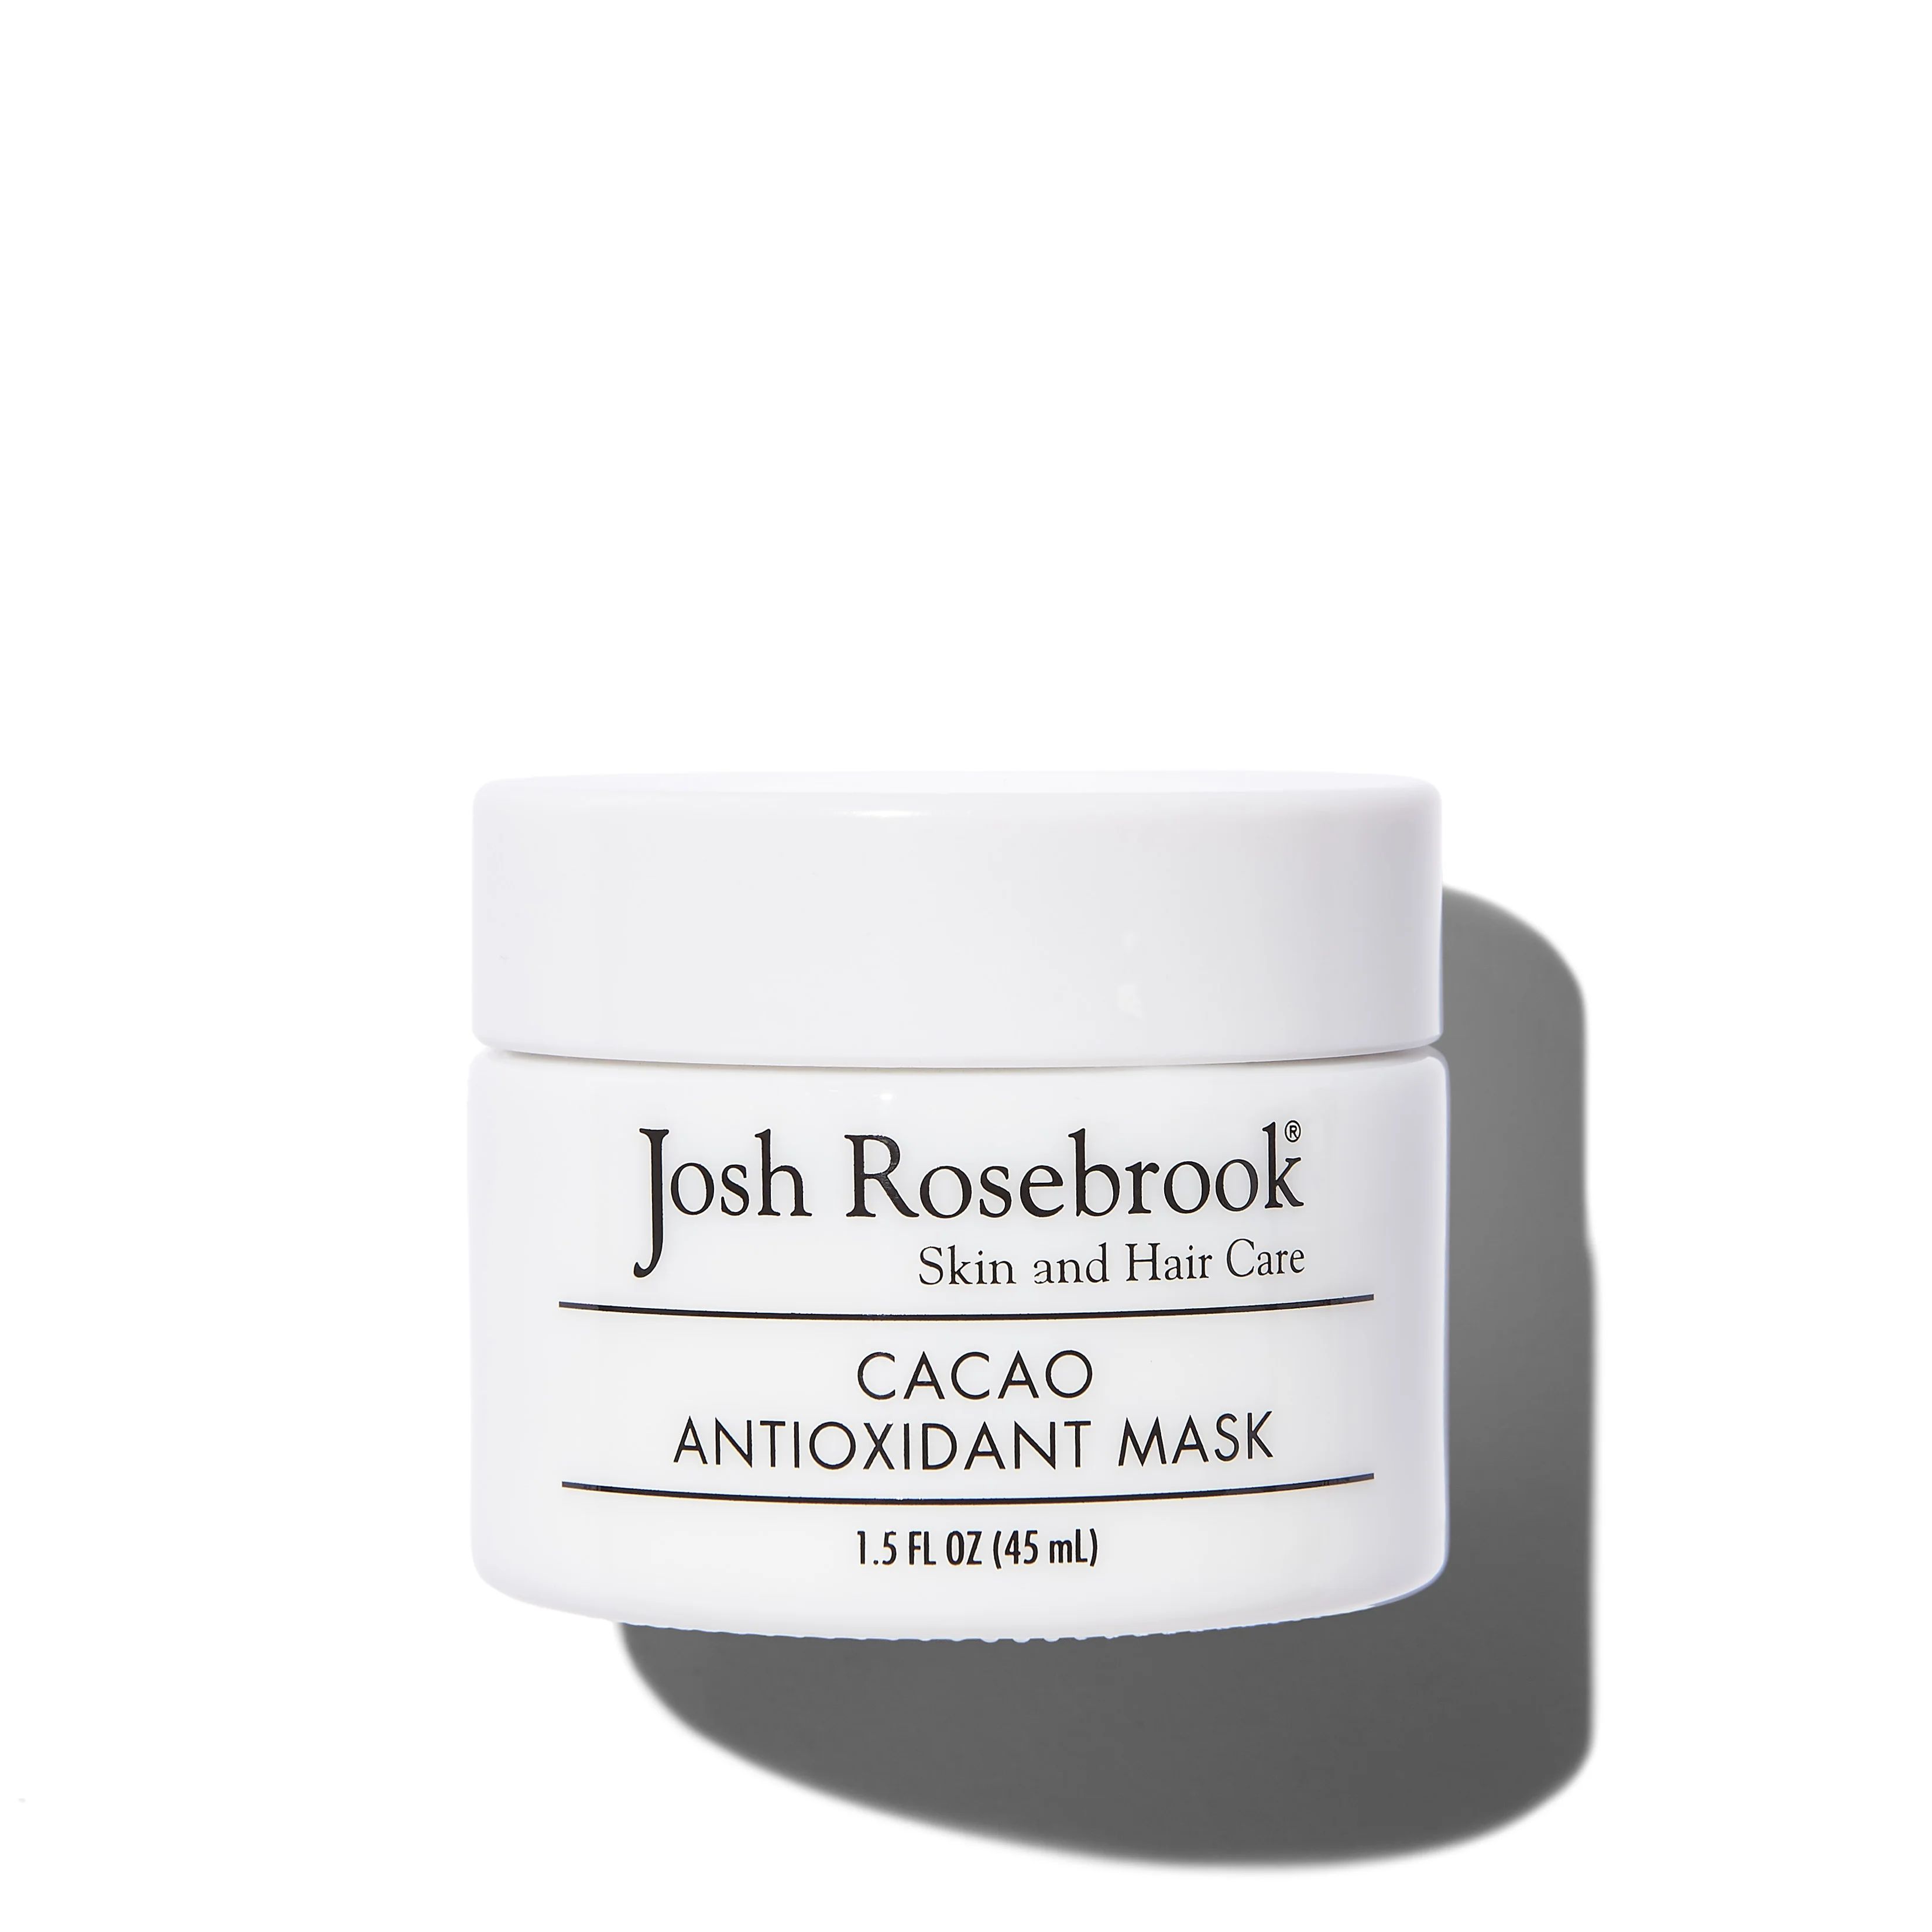 Cacao Antioxidant Mask | Follain